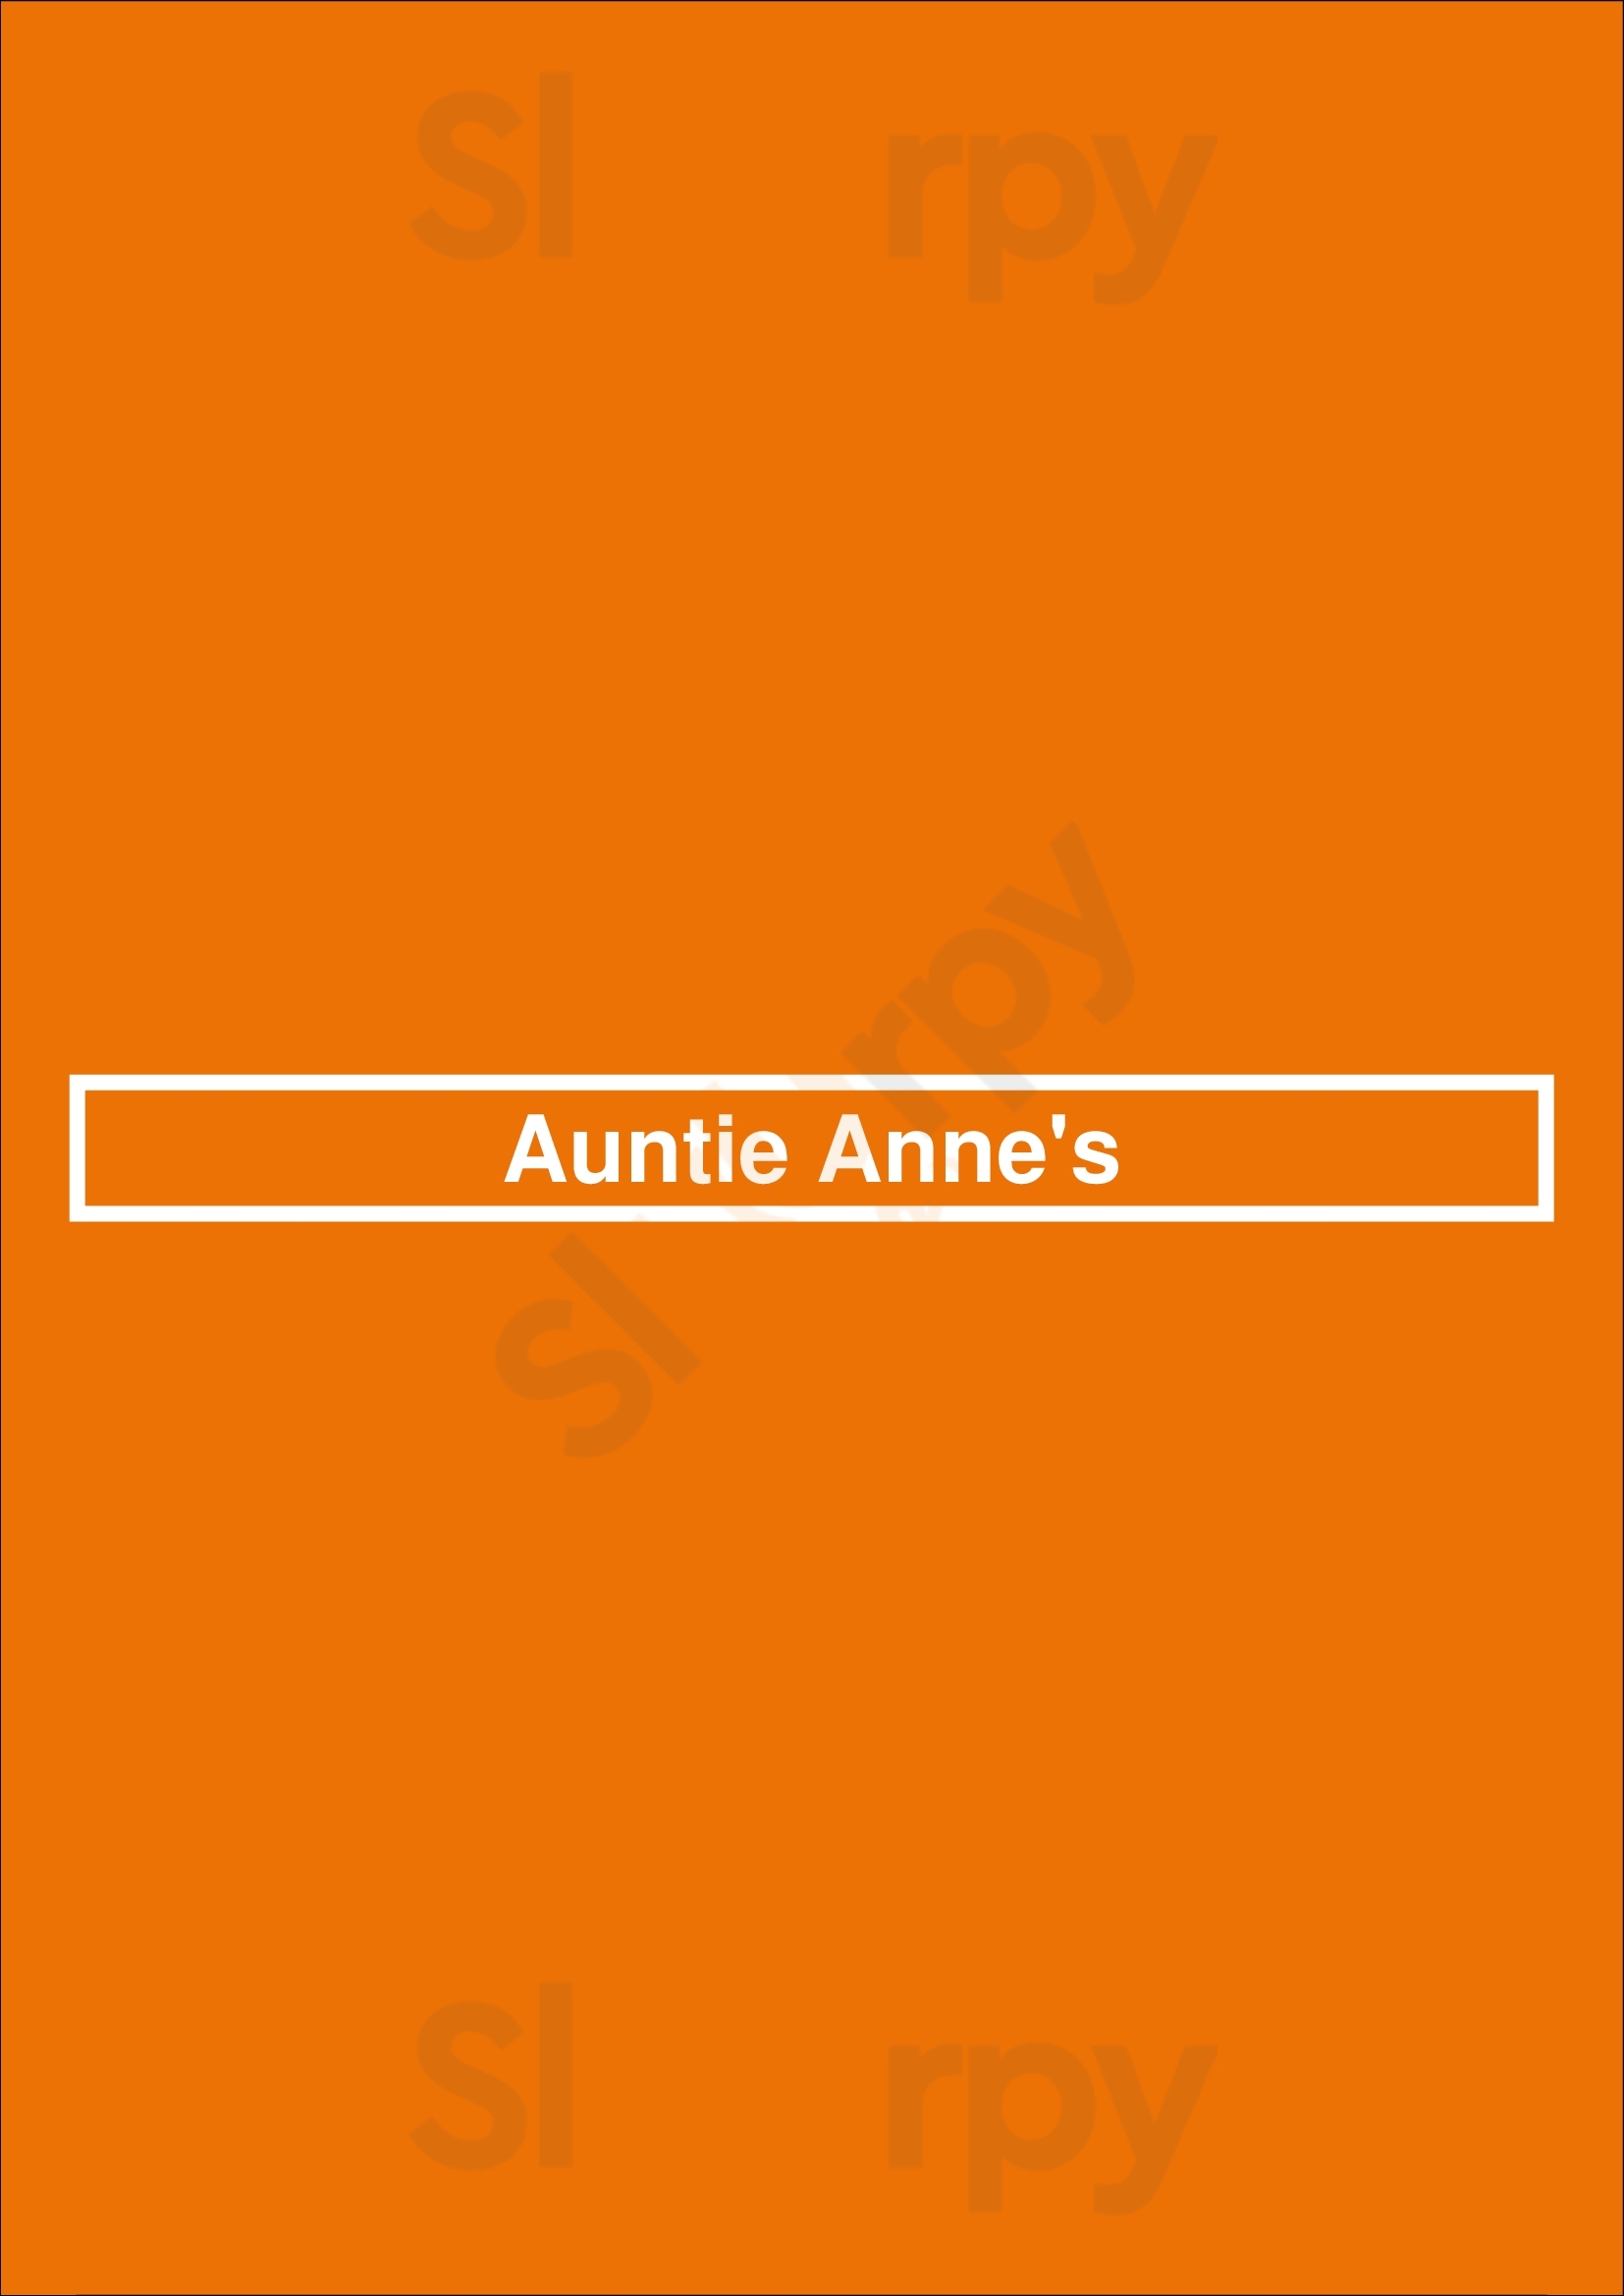 Auntie Anne's Charlotte Menu - 1